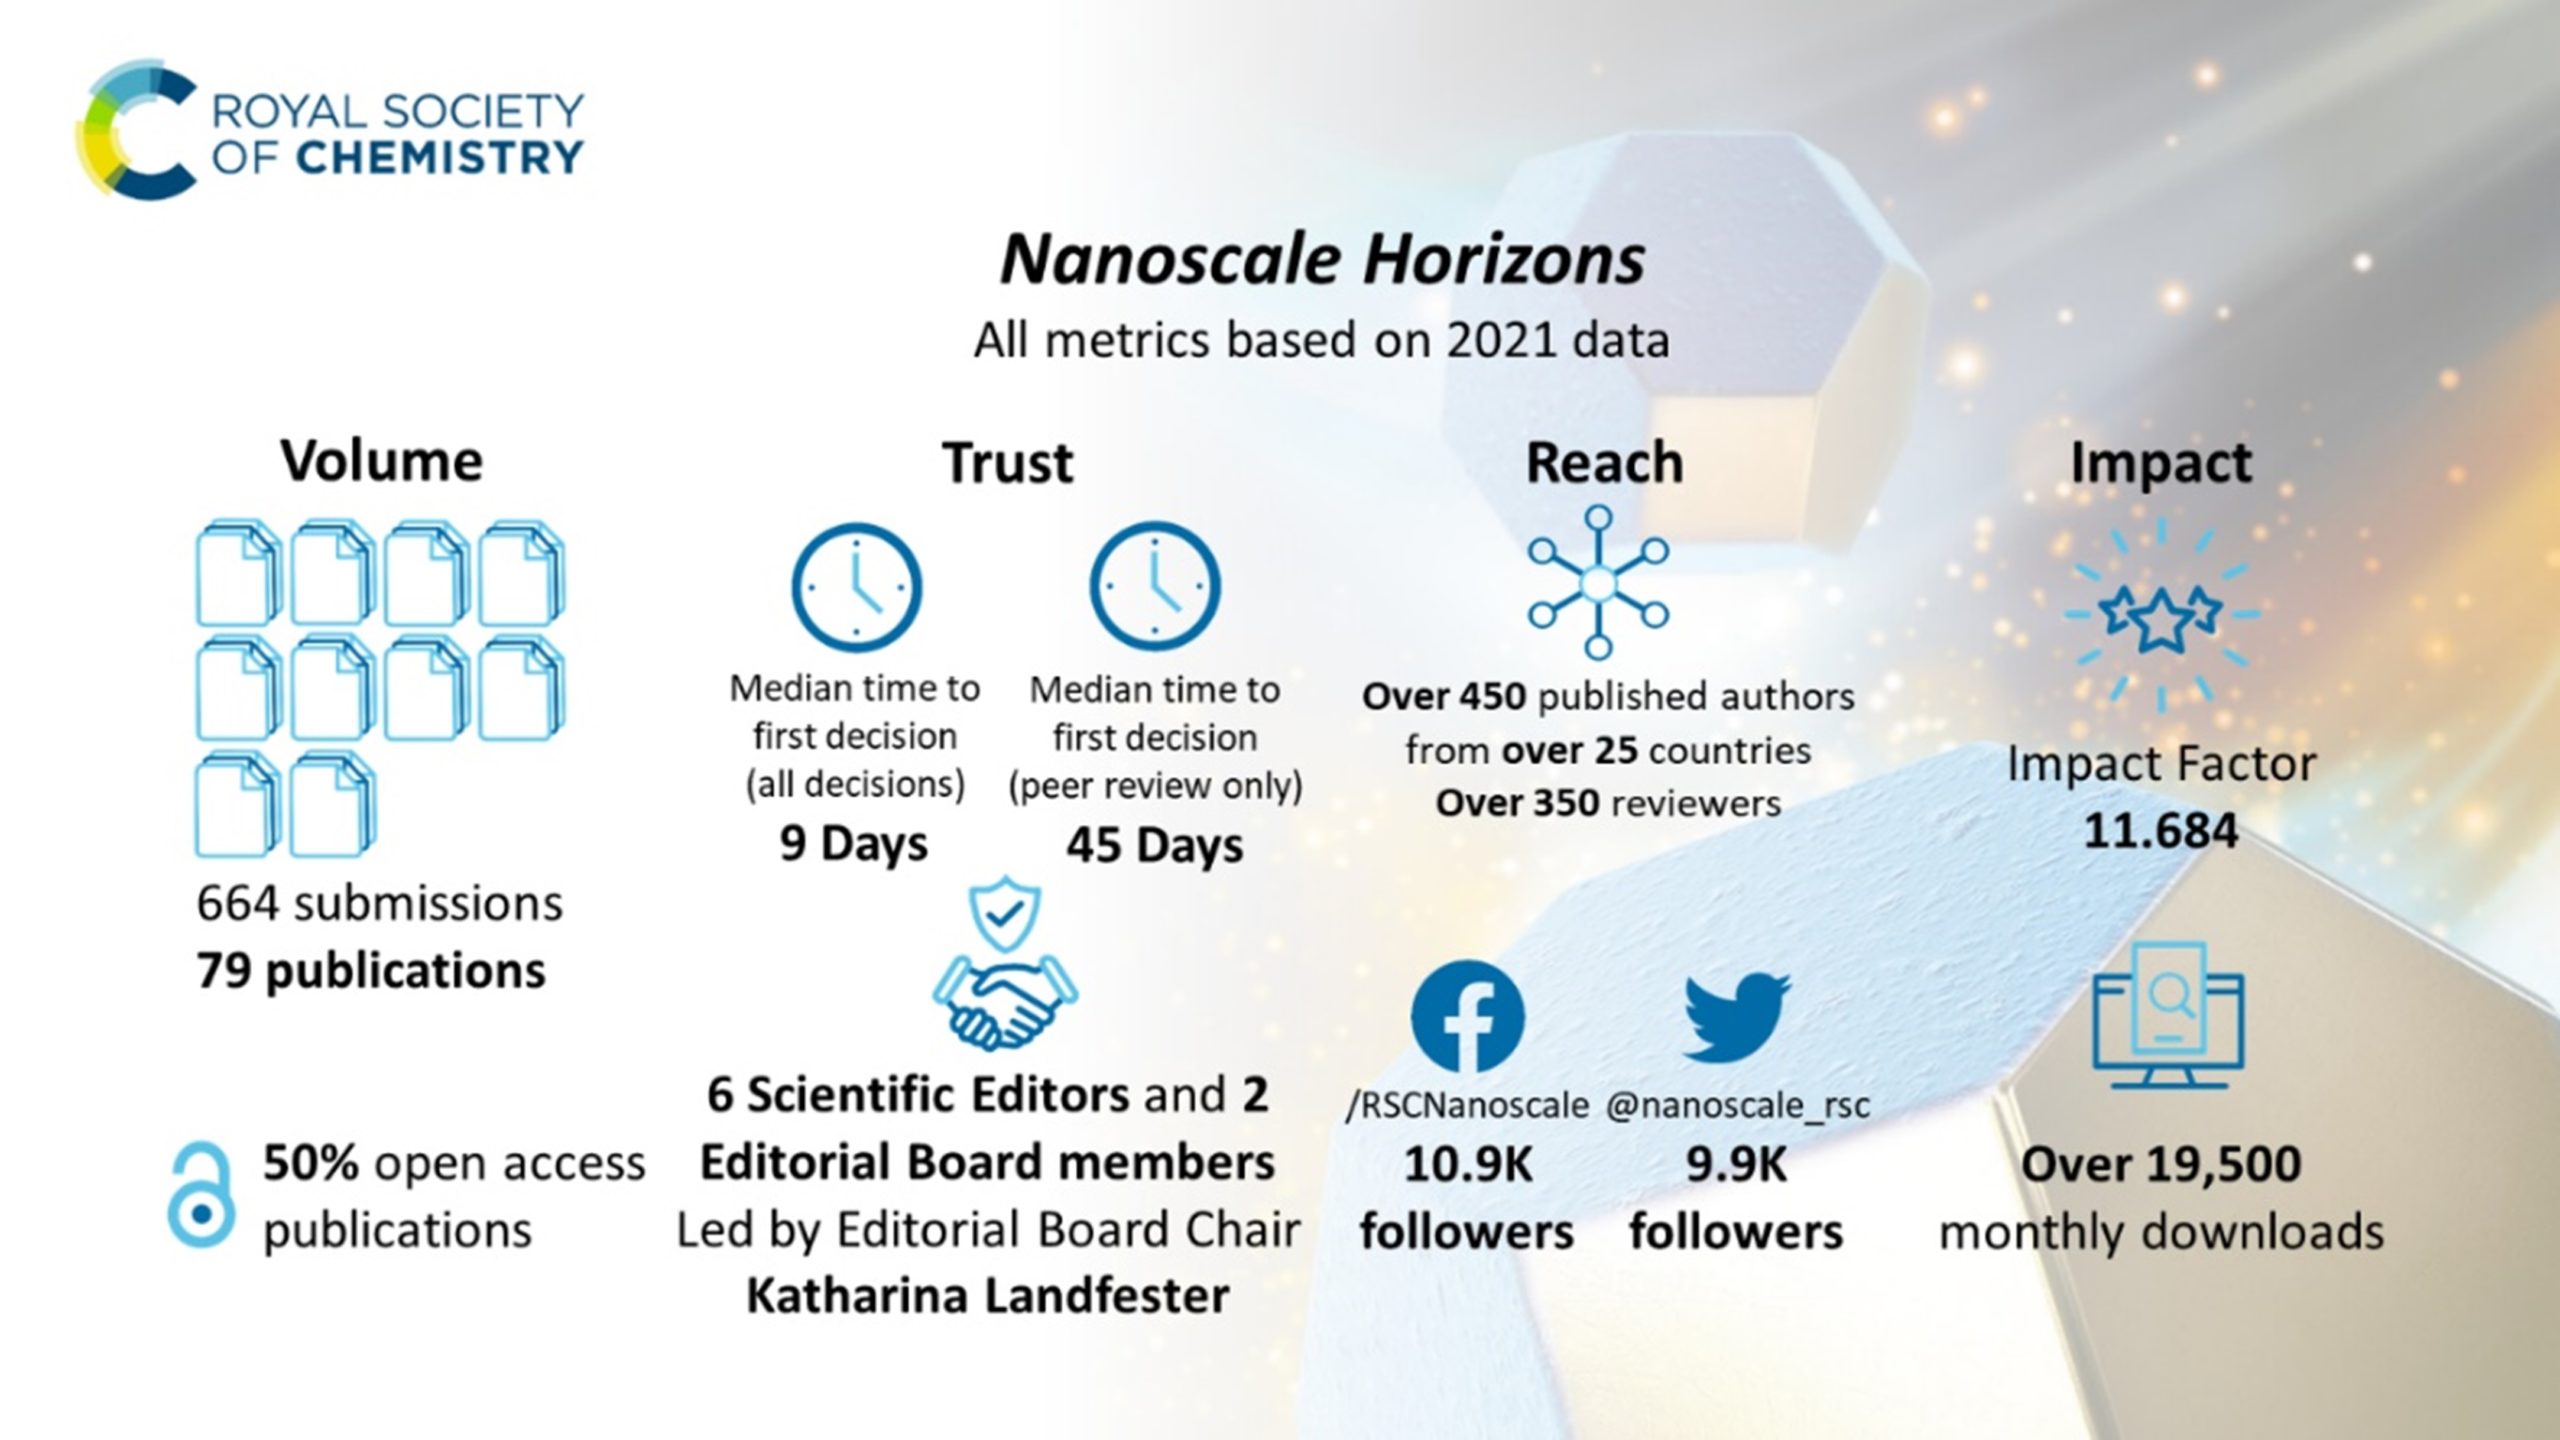 Nanoscale Horizons metrics based on 2021 data promotional graphic.